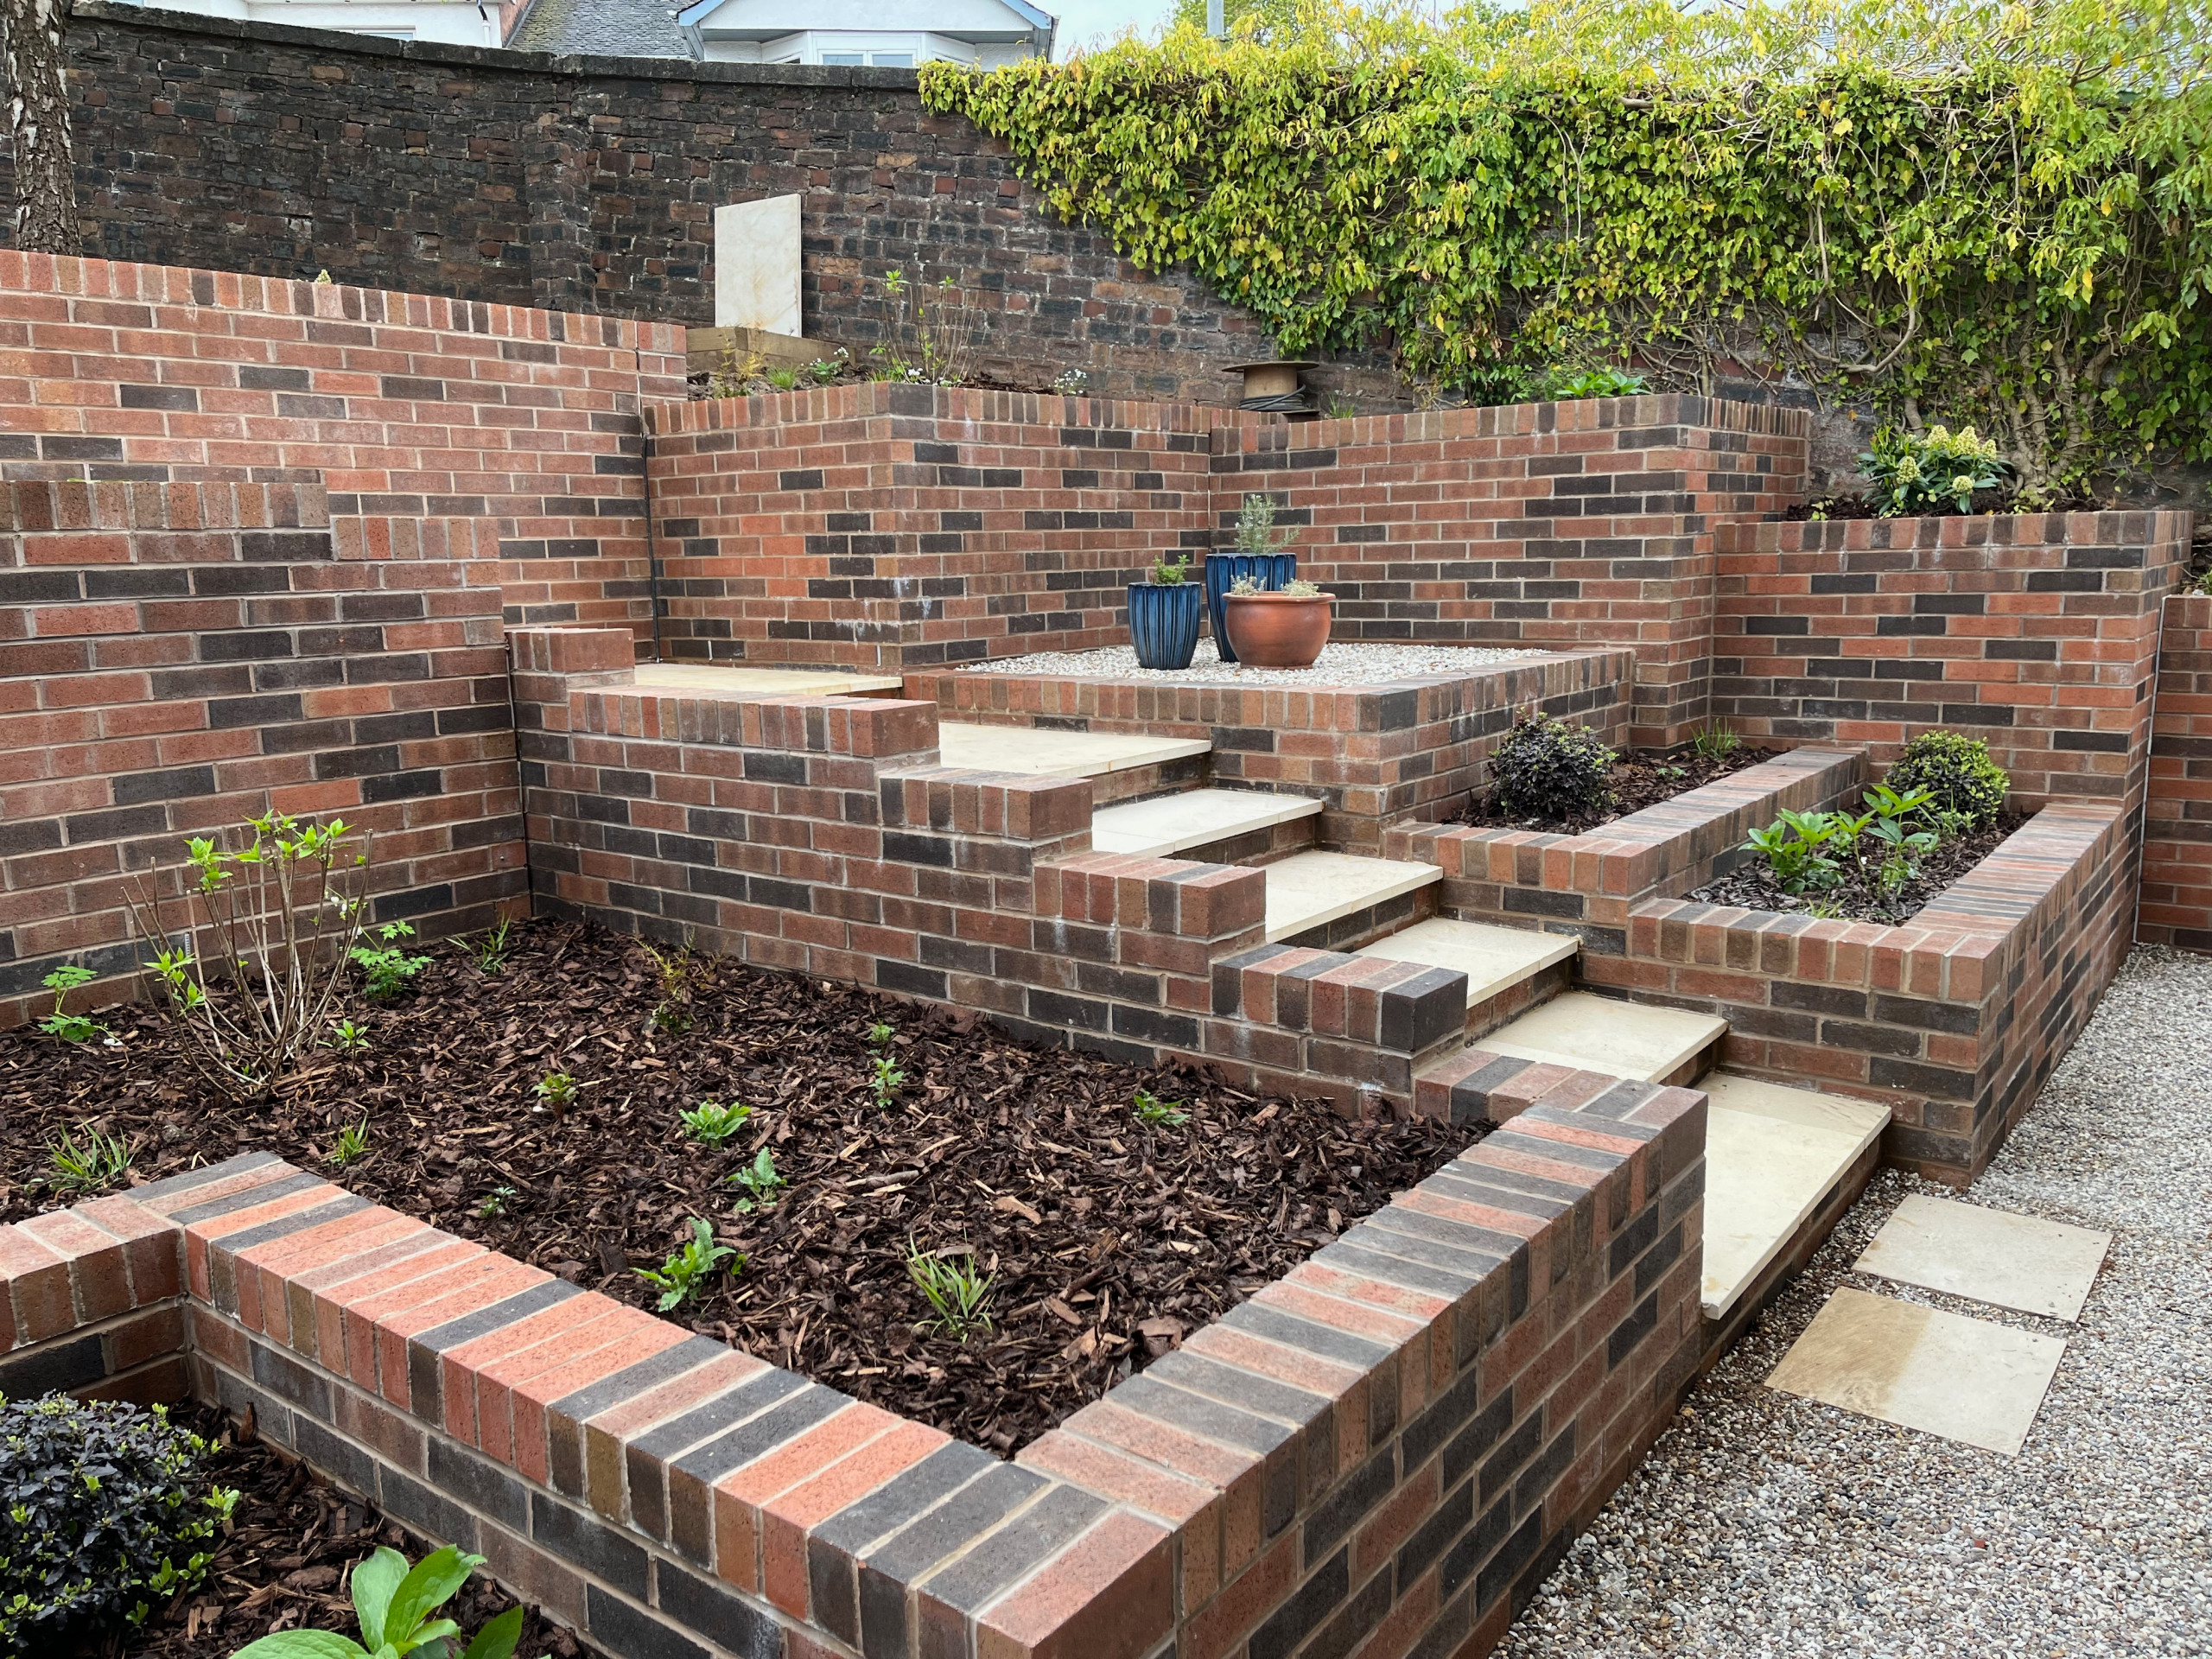 Brickwork on a sloped garden